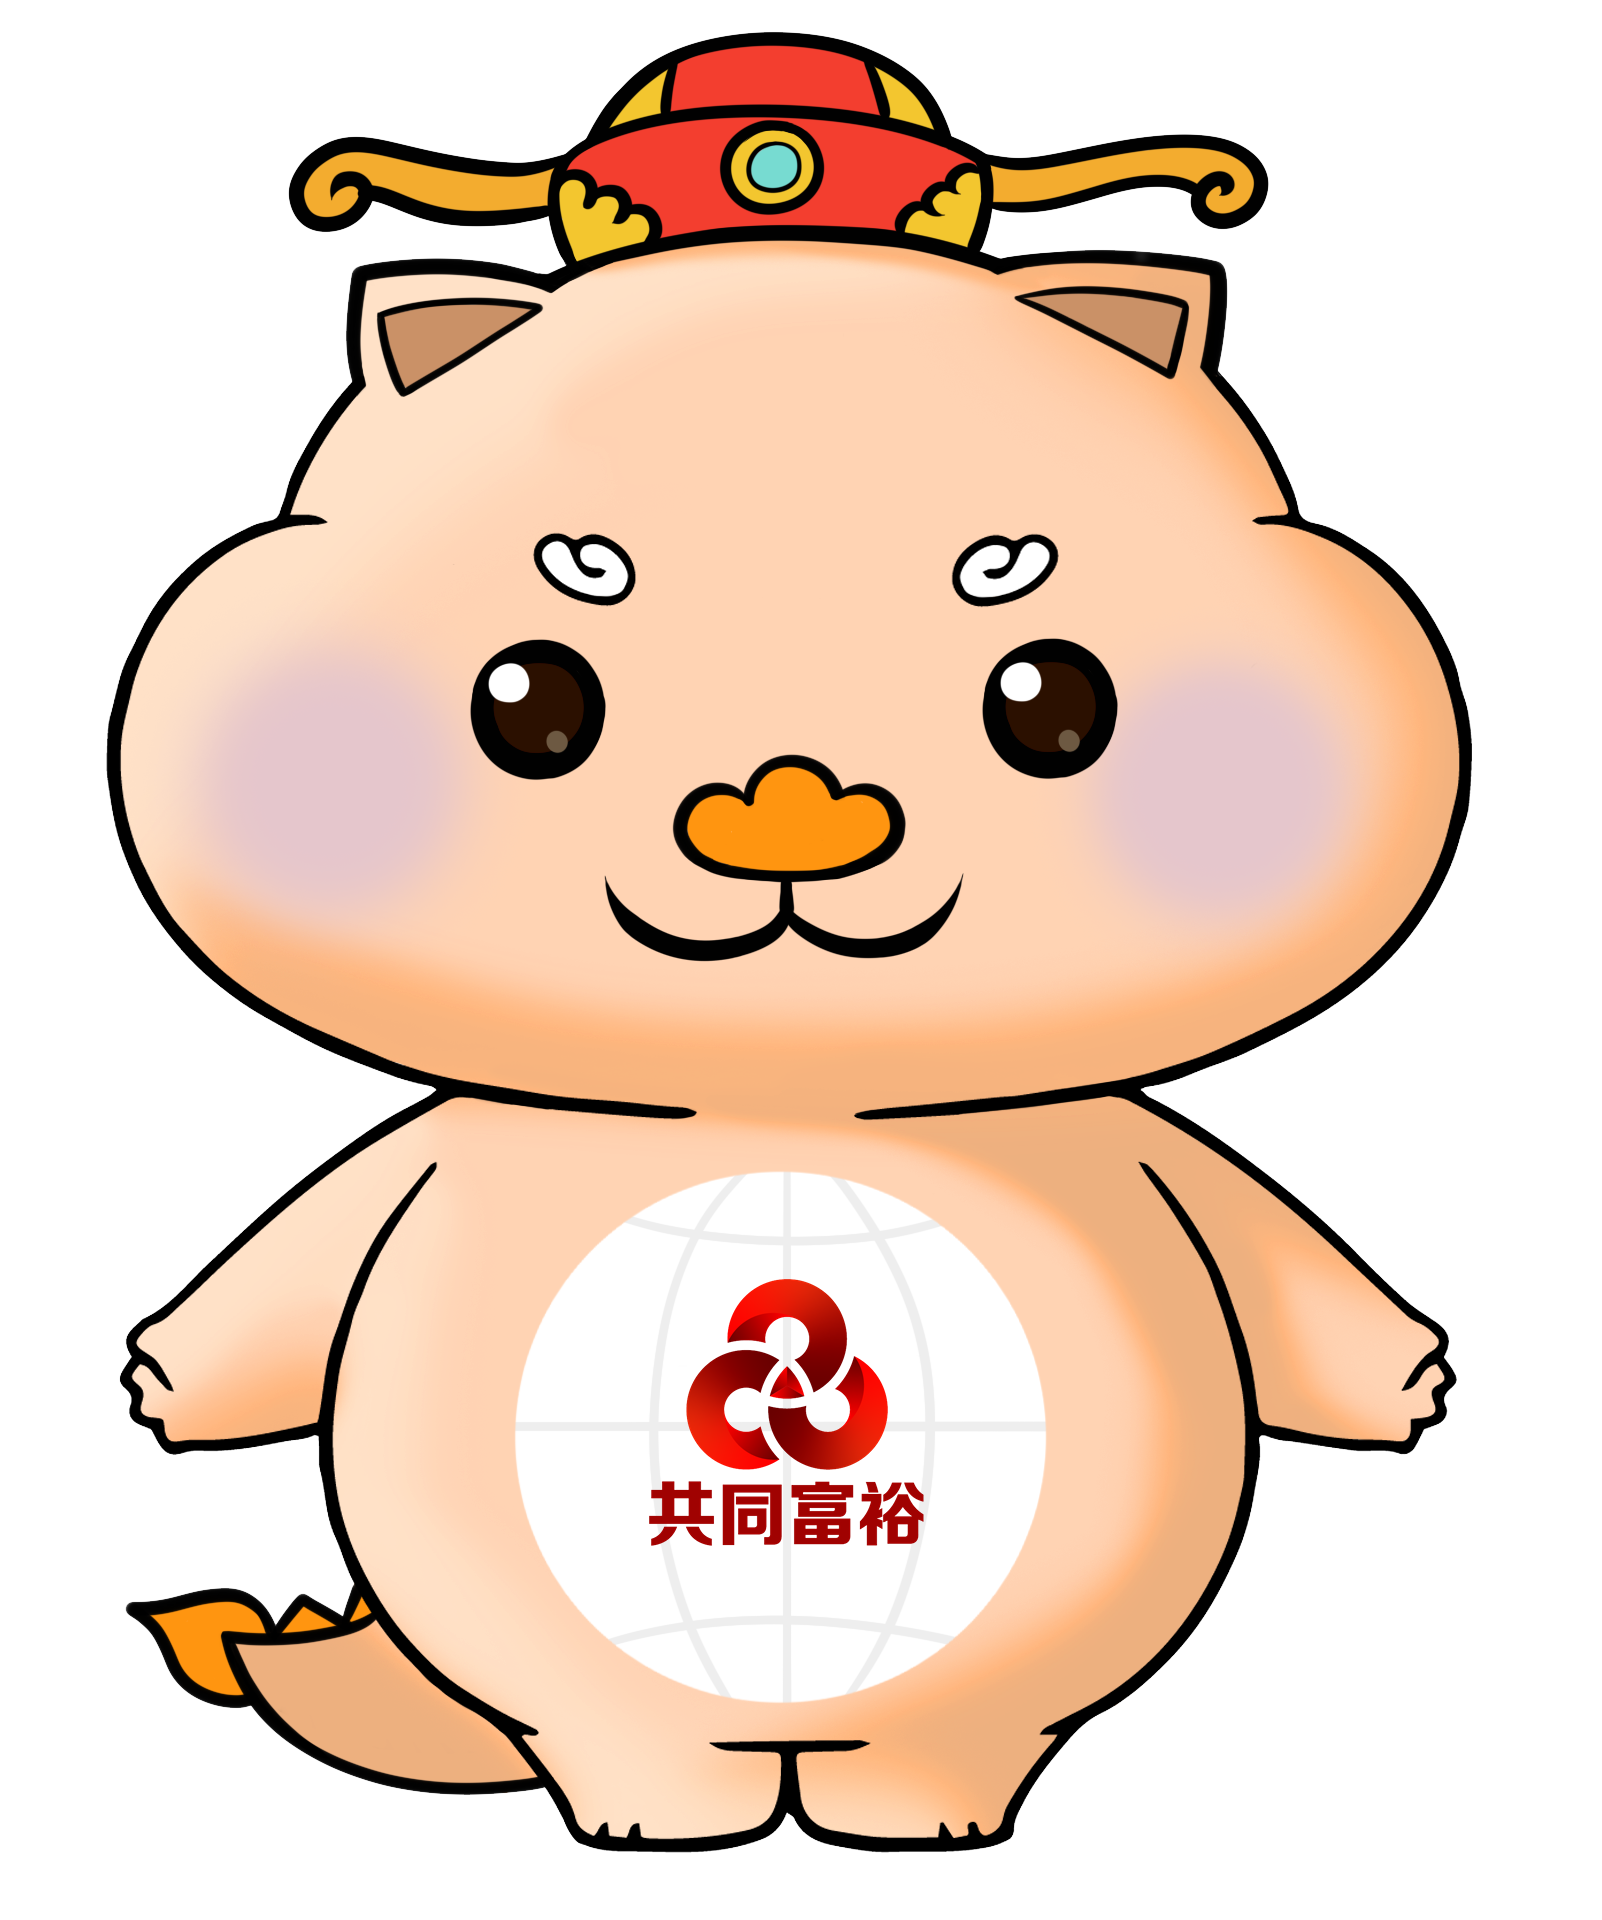 中国共同富裕发展论坛正式发布官方吉祥物——小共,大同,富富,裕裕